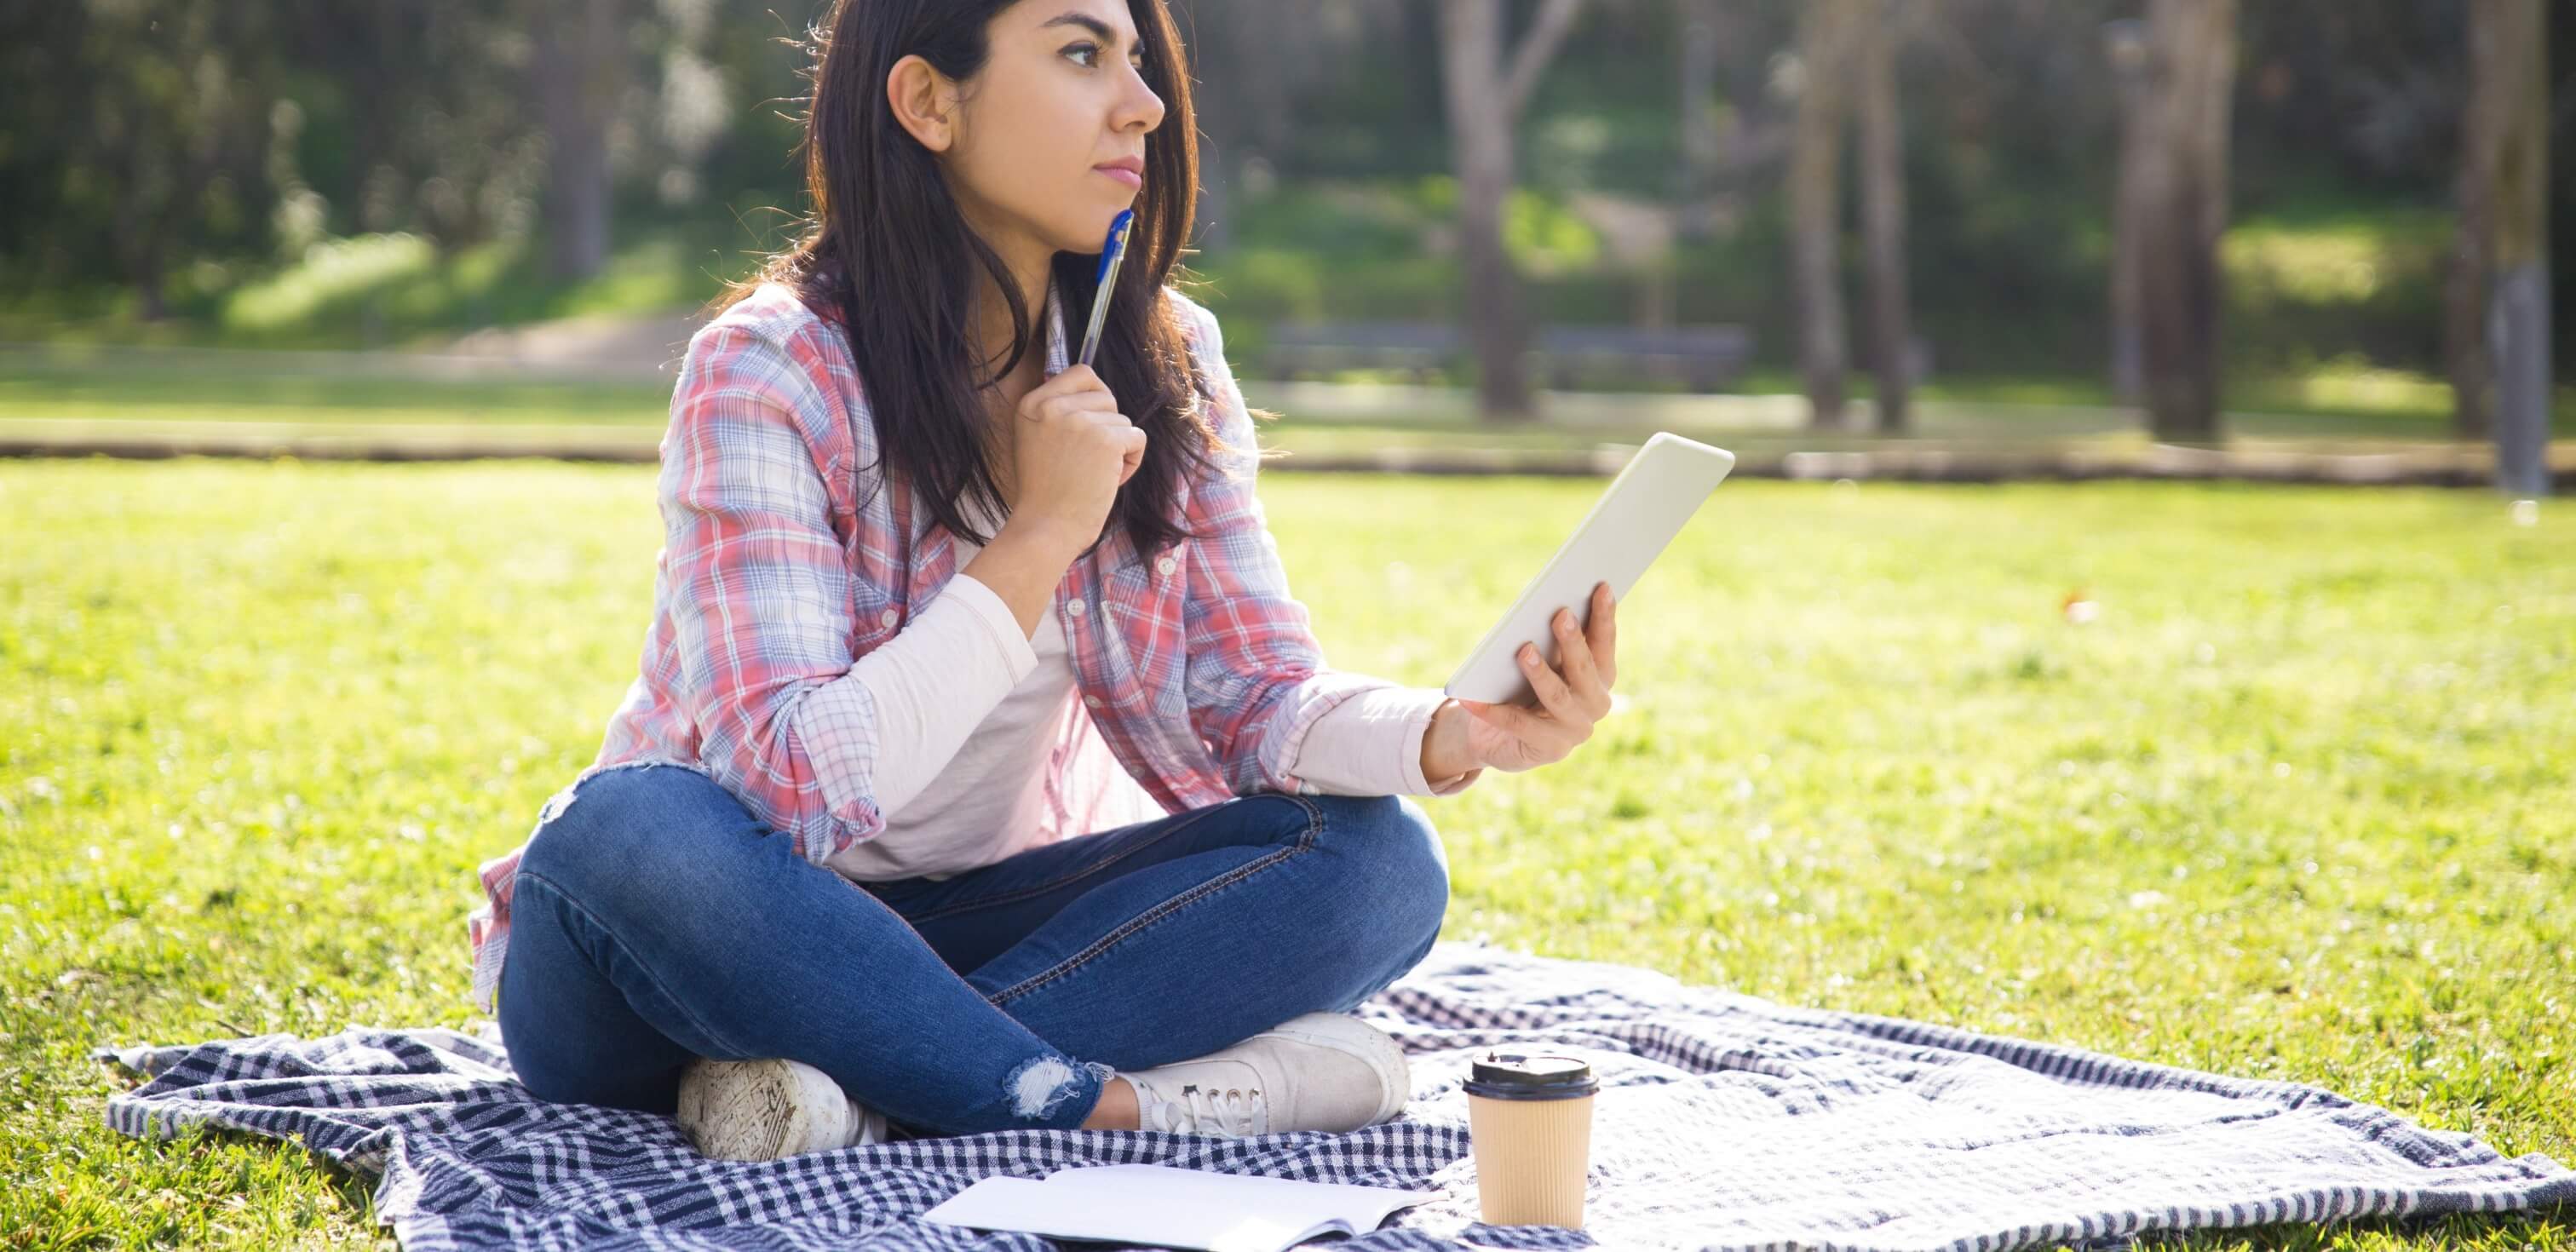 modelos de introdução para redação: imagem de uma mulher sentada no chão em um parque. Ela está segurando um caderno e olhando para o alto com a expressão pensativa.